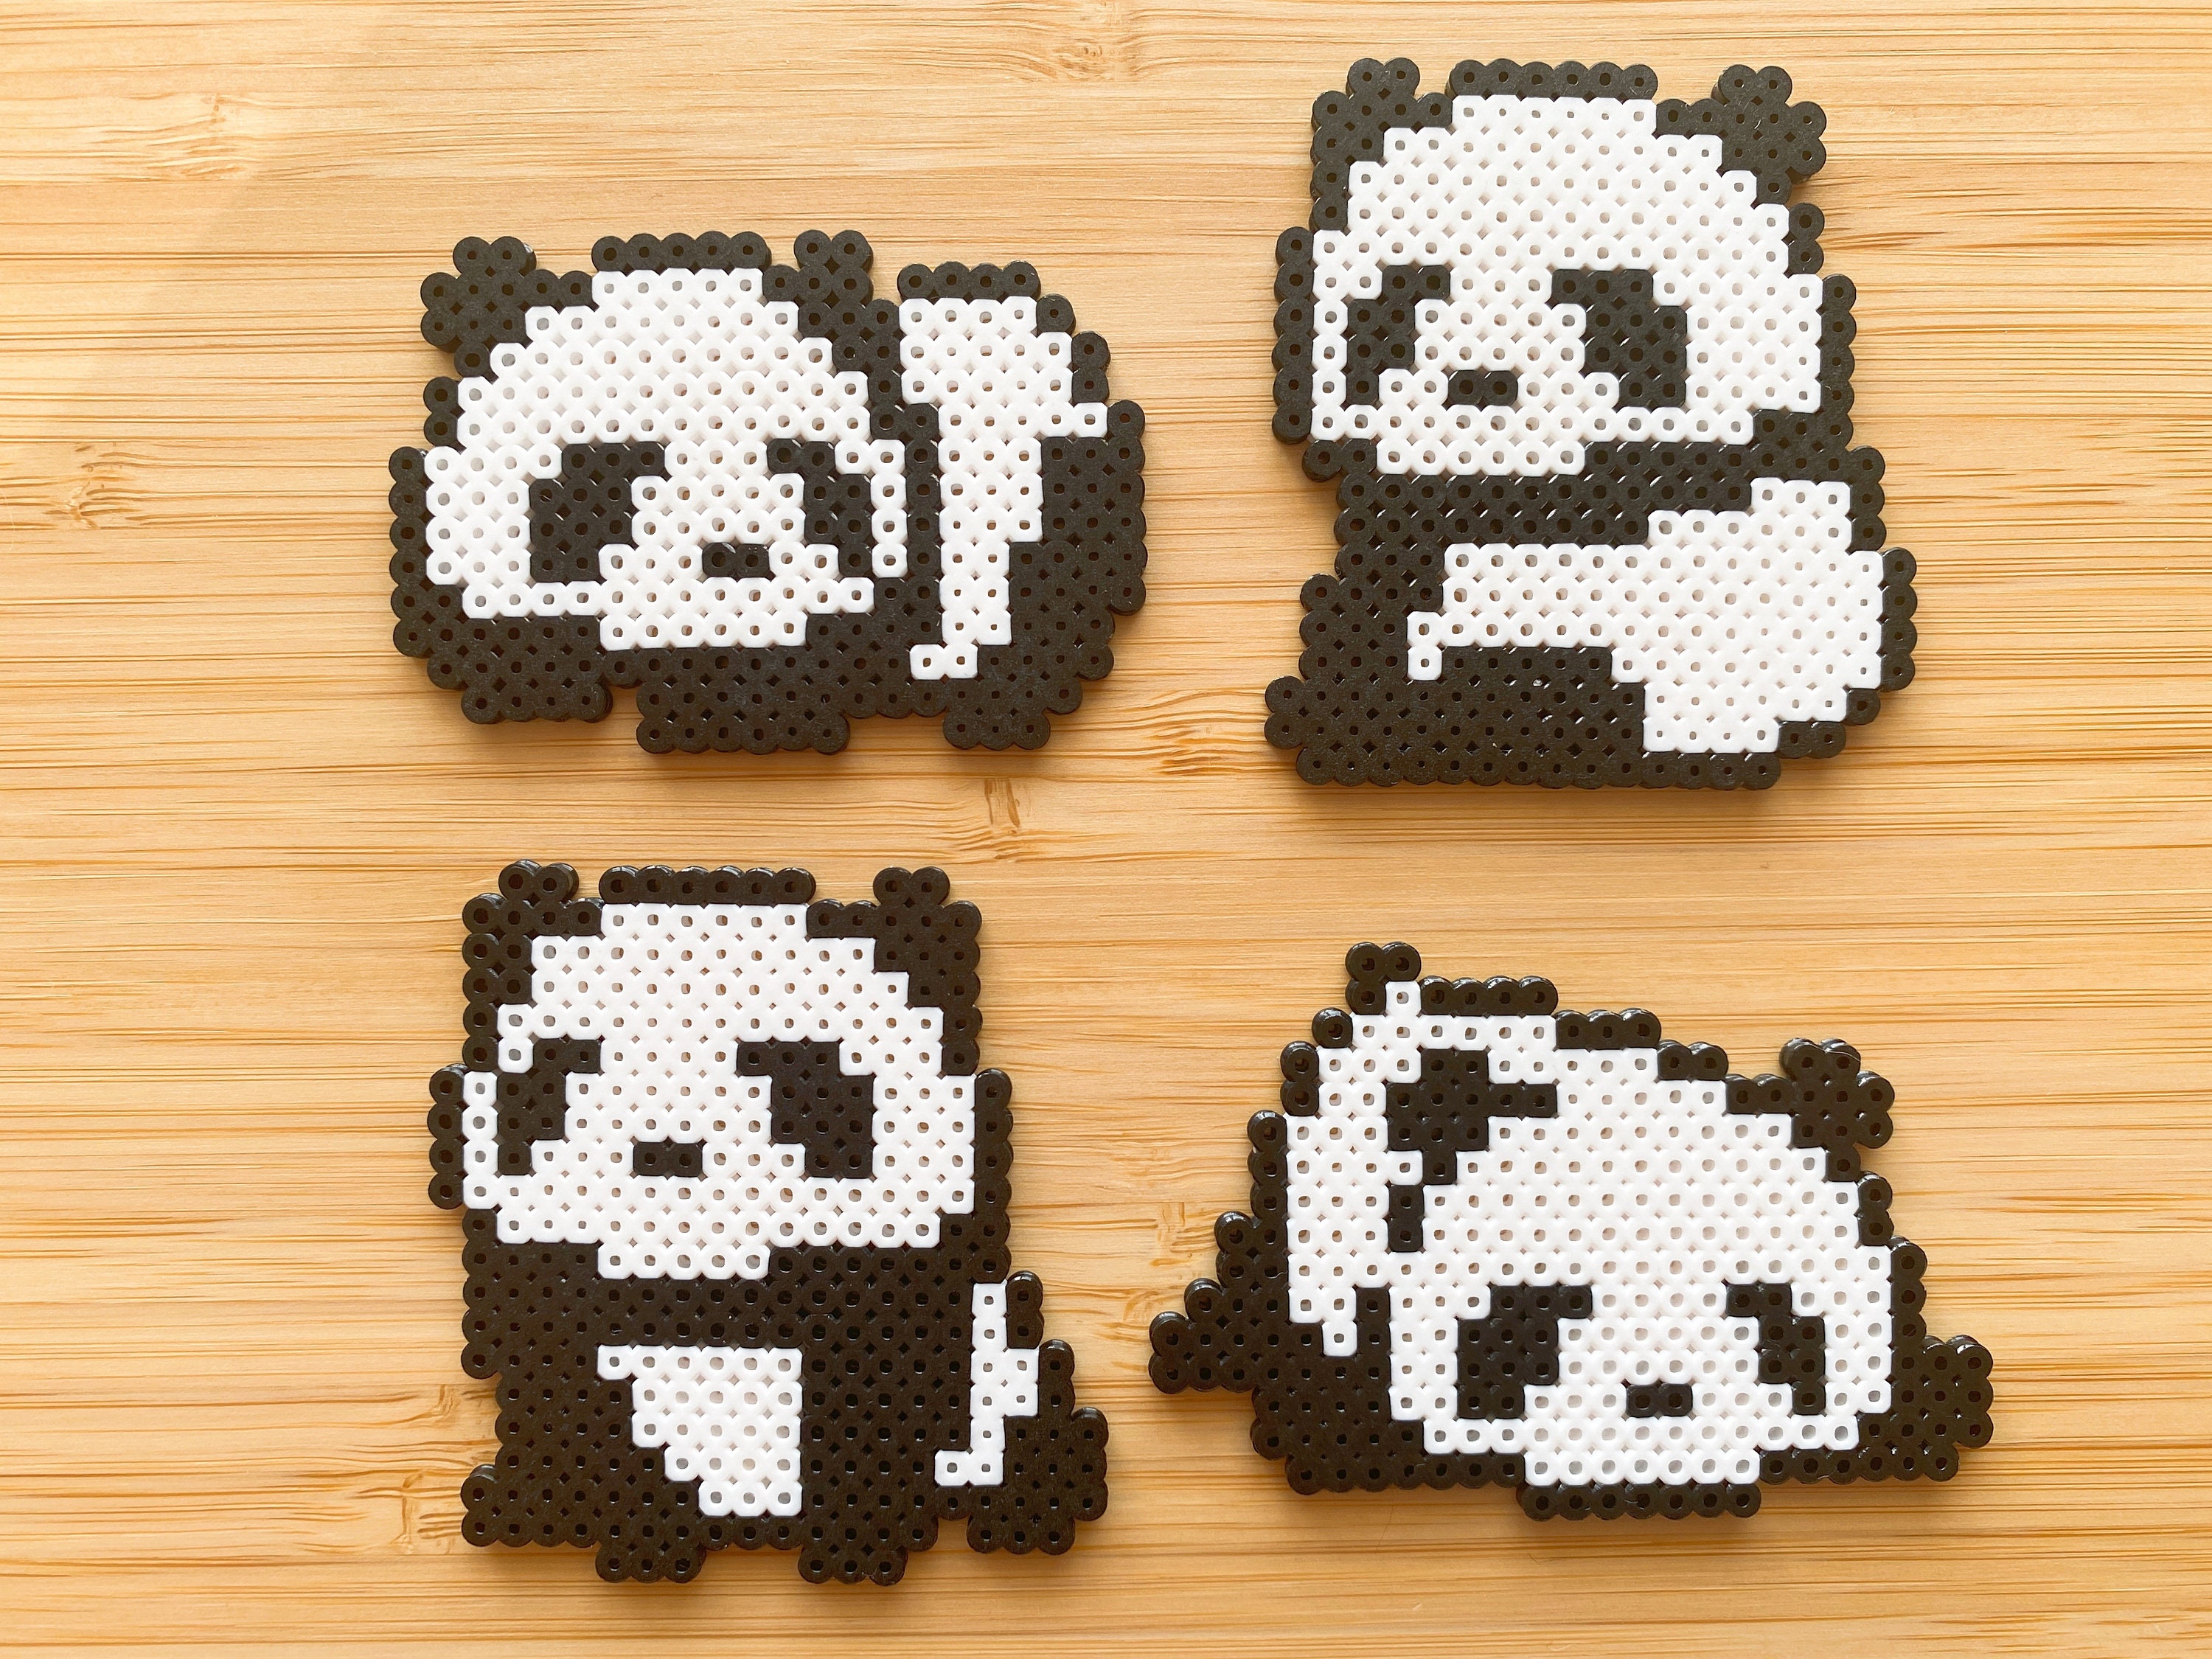 Panda Perler Beads (20+ Free Patterns) - DIY Candy